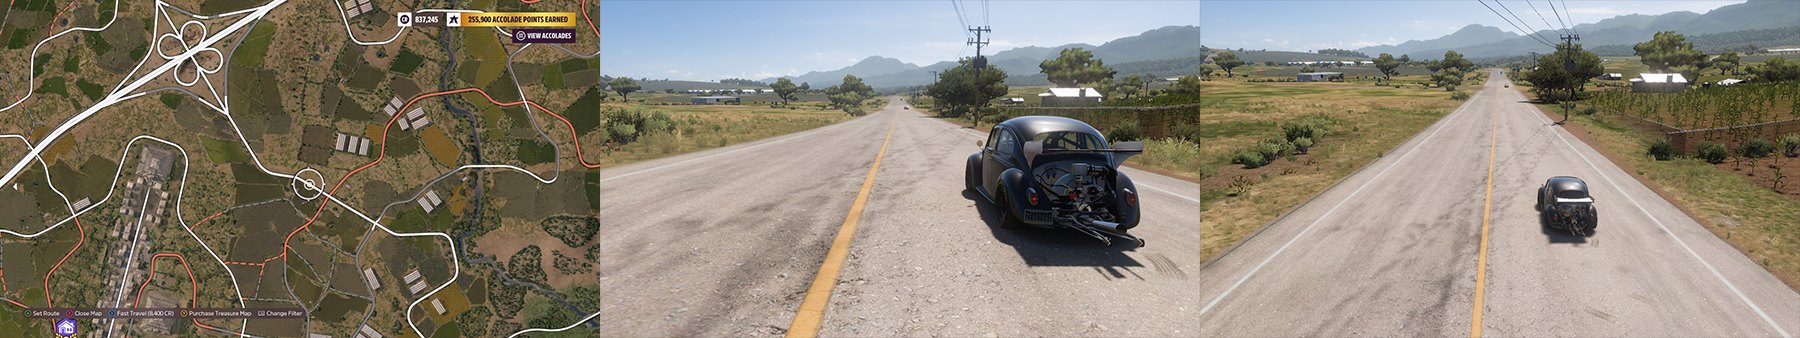 Forza Horizon 5 Tips & Trick for Drag Racer - Immersive 